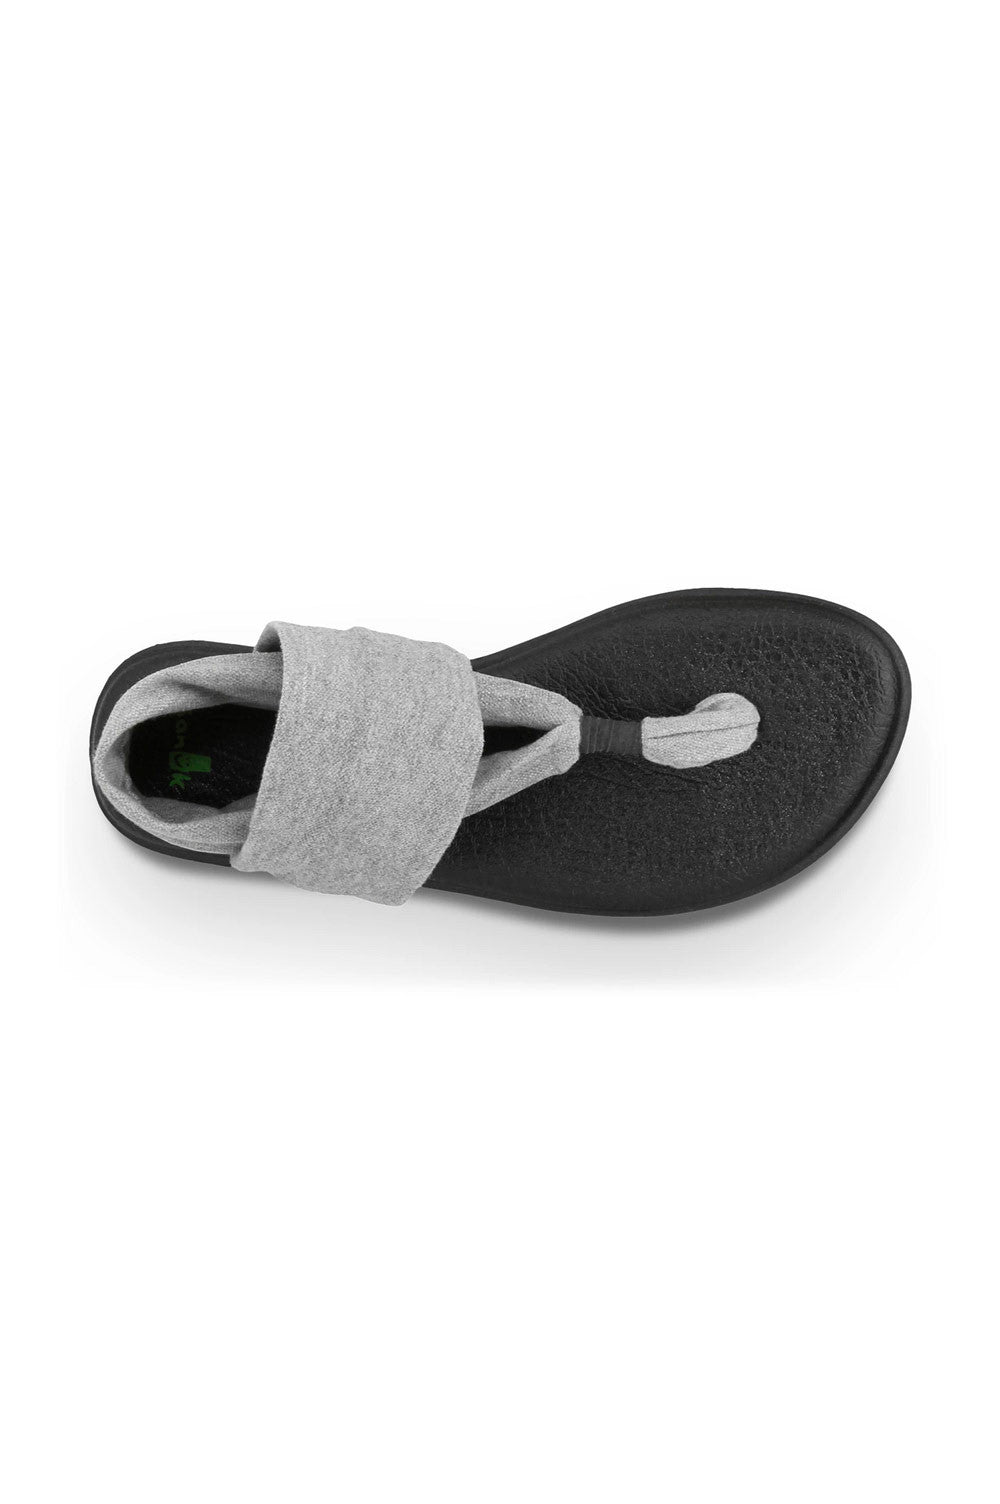 Sanuk Yoga Mat Yoga Sling 2 Sandals– Mainland Skate & Surf